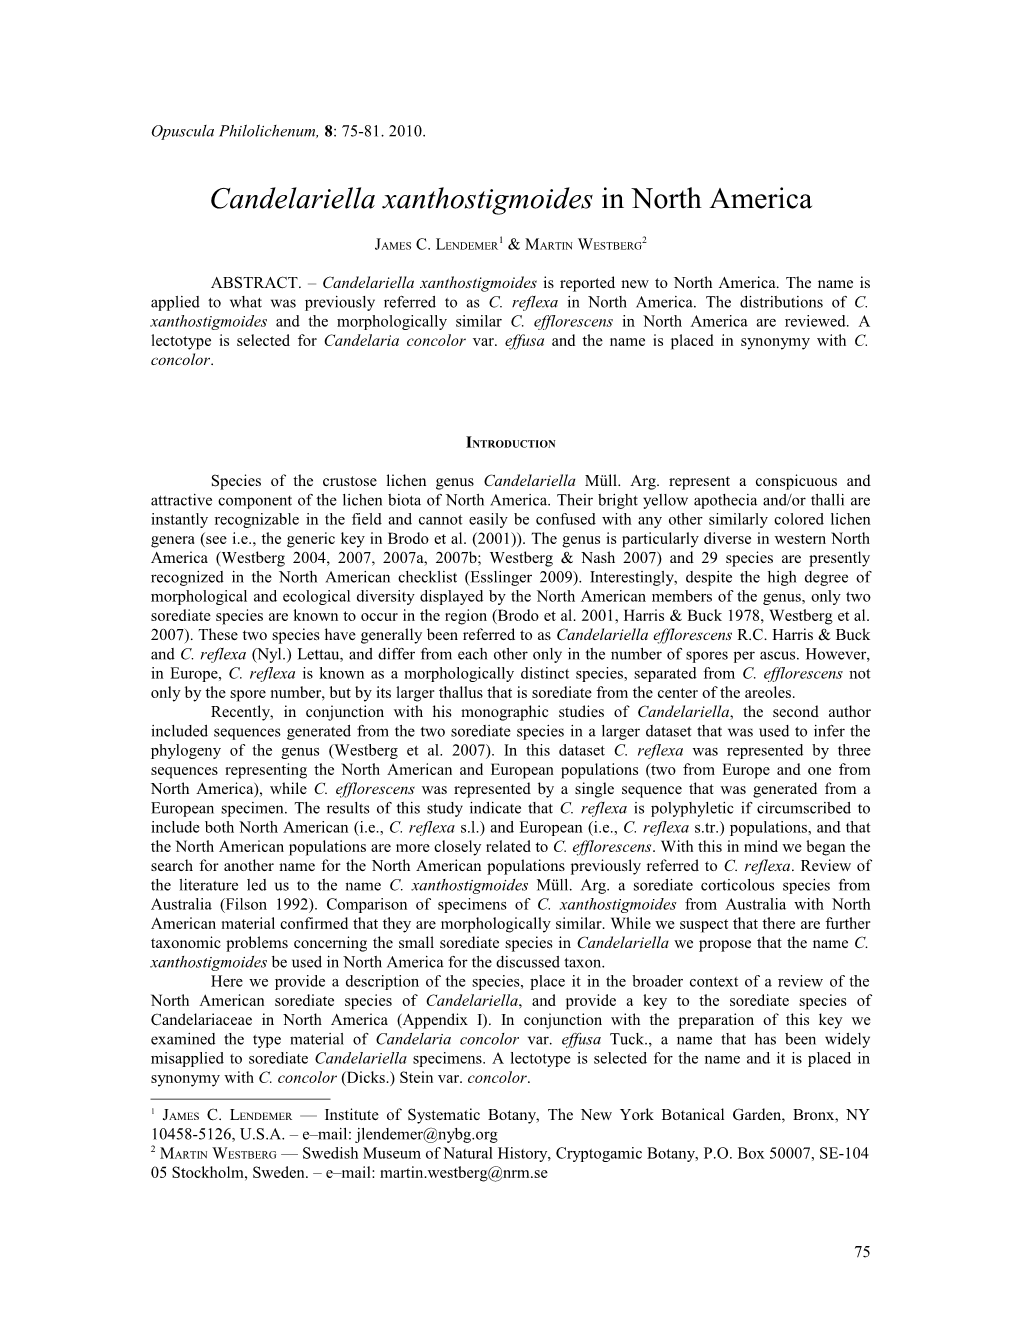 Candelariella Xanthostigmoides in North America